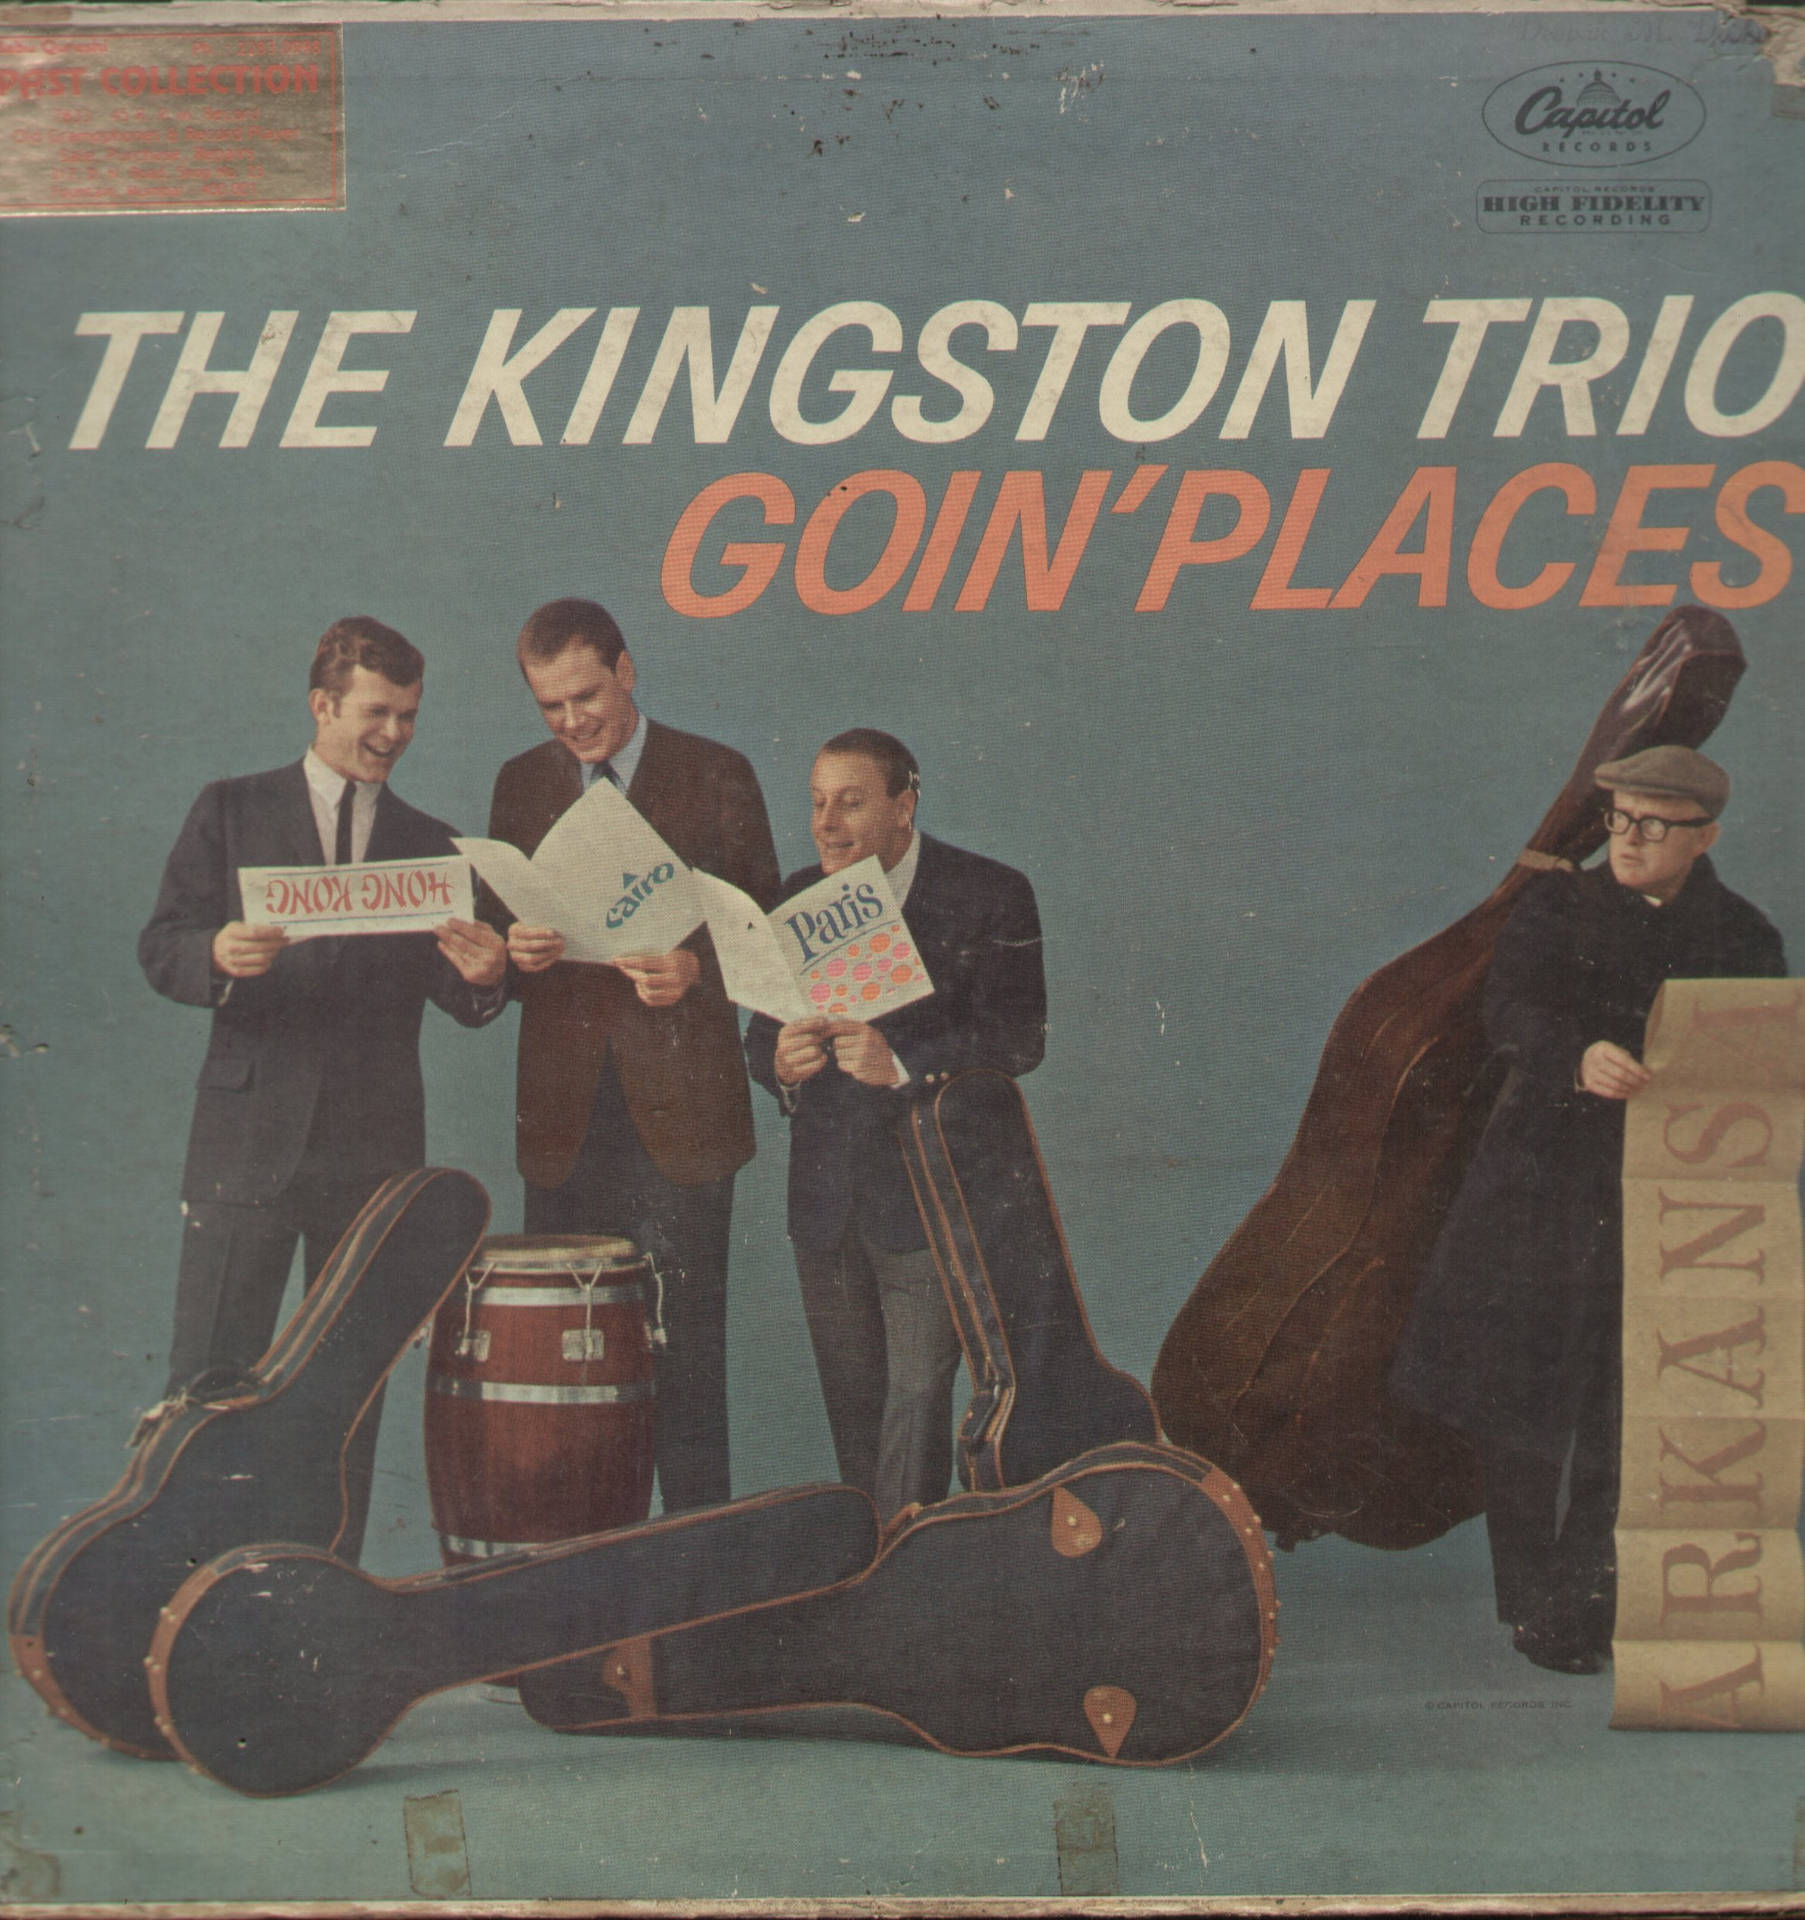 Kingston Trio Goin Steder Album Cover Wallpaper Wallpaper